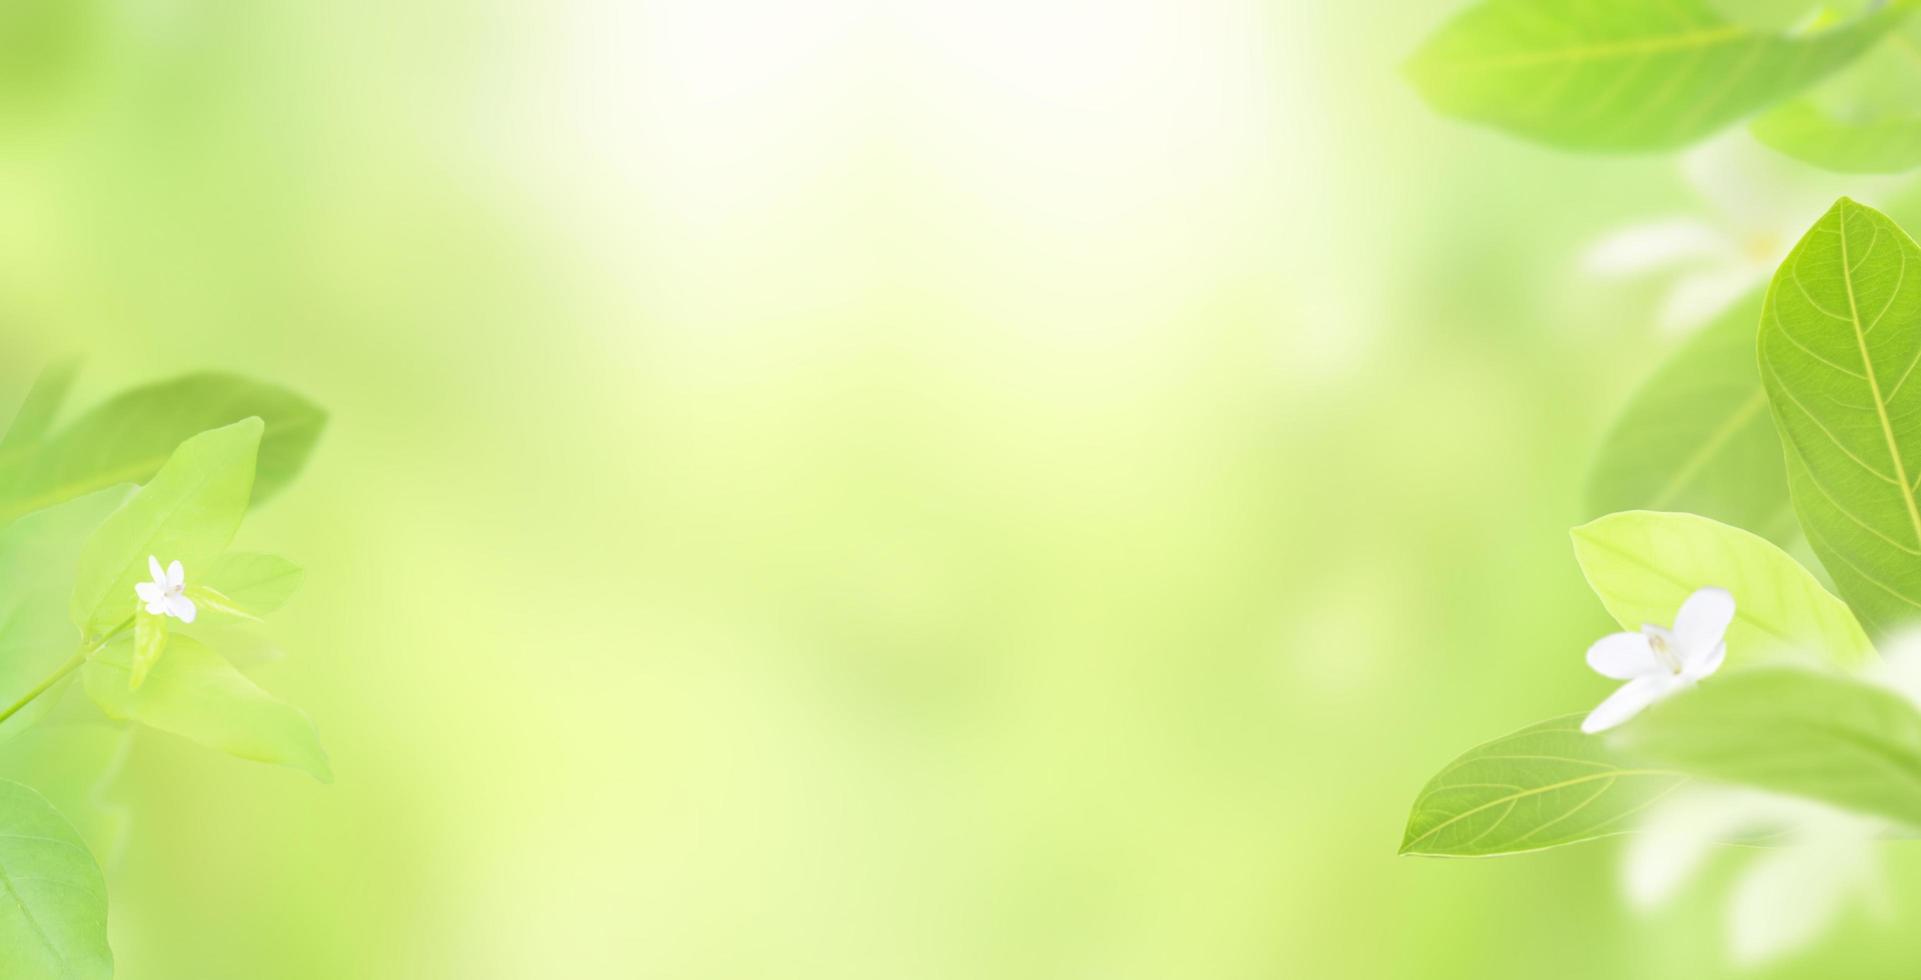 aard van vers groen blad op onscherpe groene achtergrond en zon met kopie ruimte voor tekst, natuurlijke groene plant voor milieu-ecologie en vers concept, gebruiken als achtergrond voorblad en behang foto